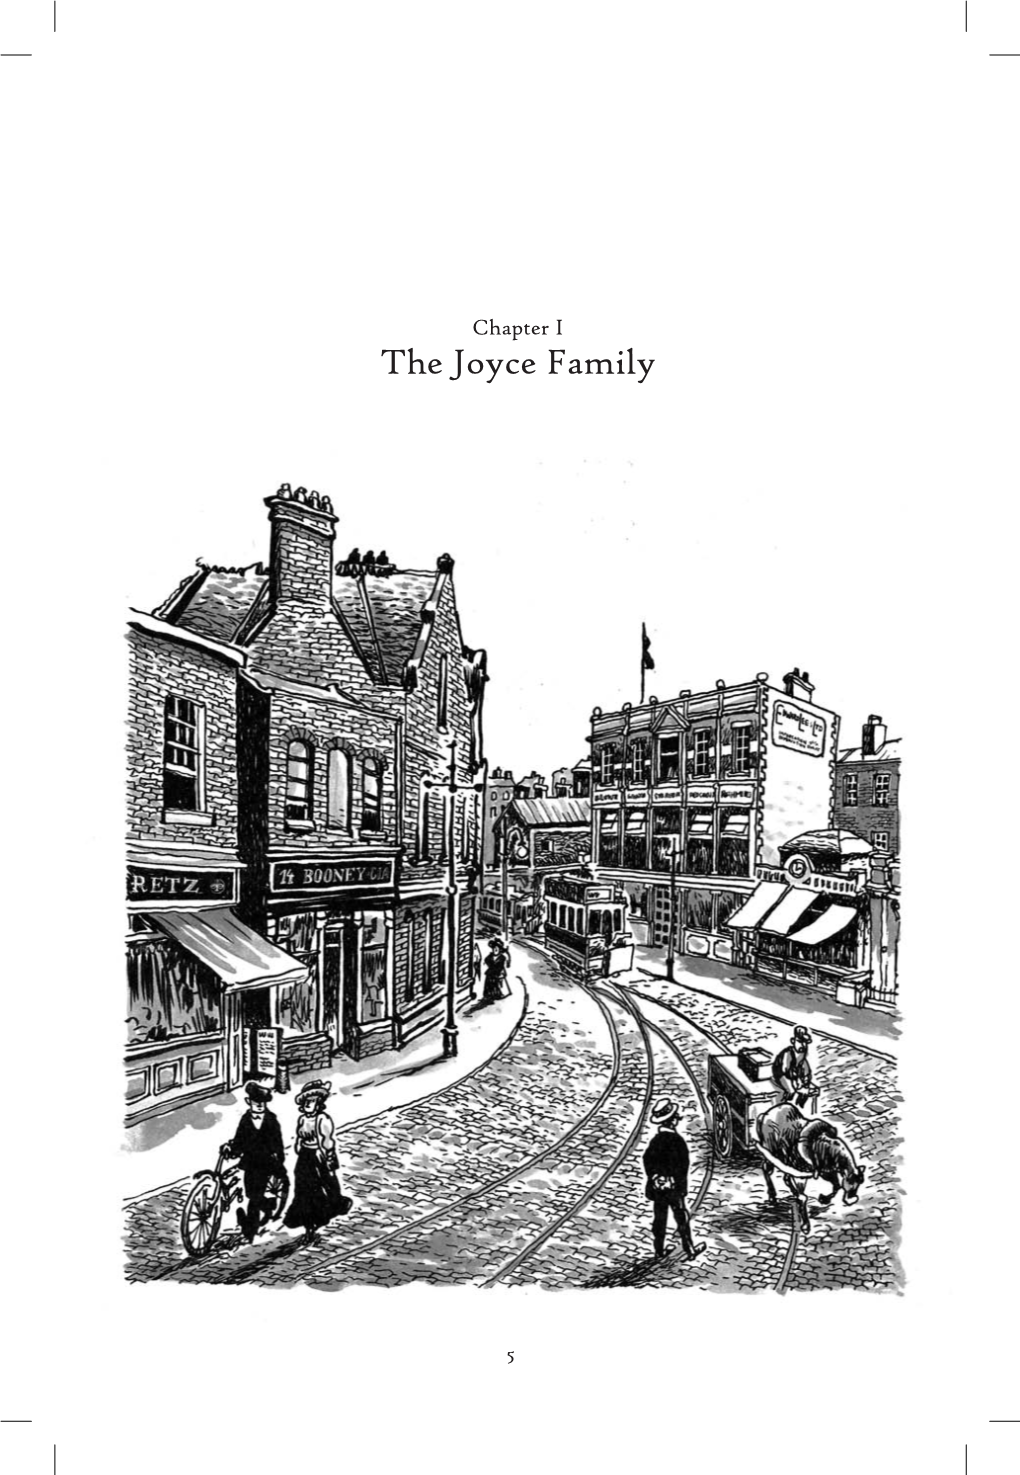 The Joyce Family